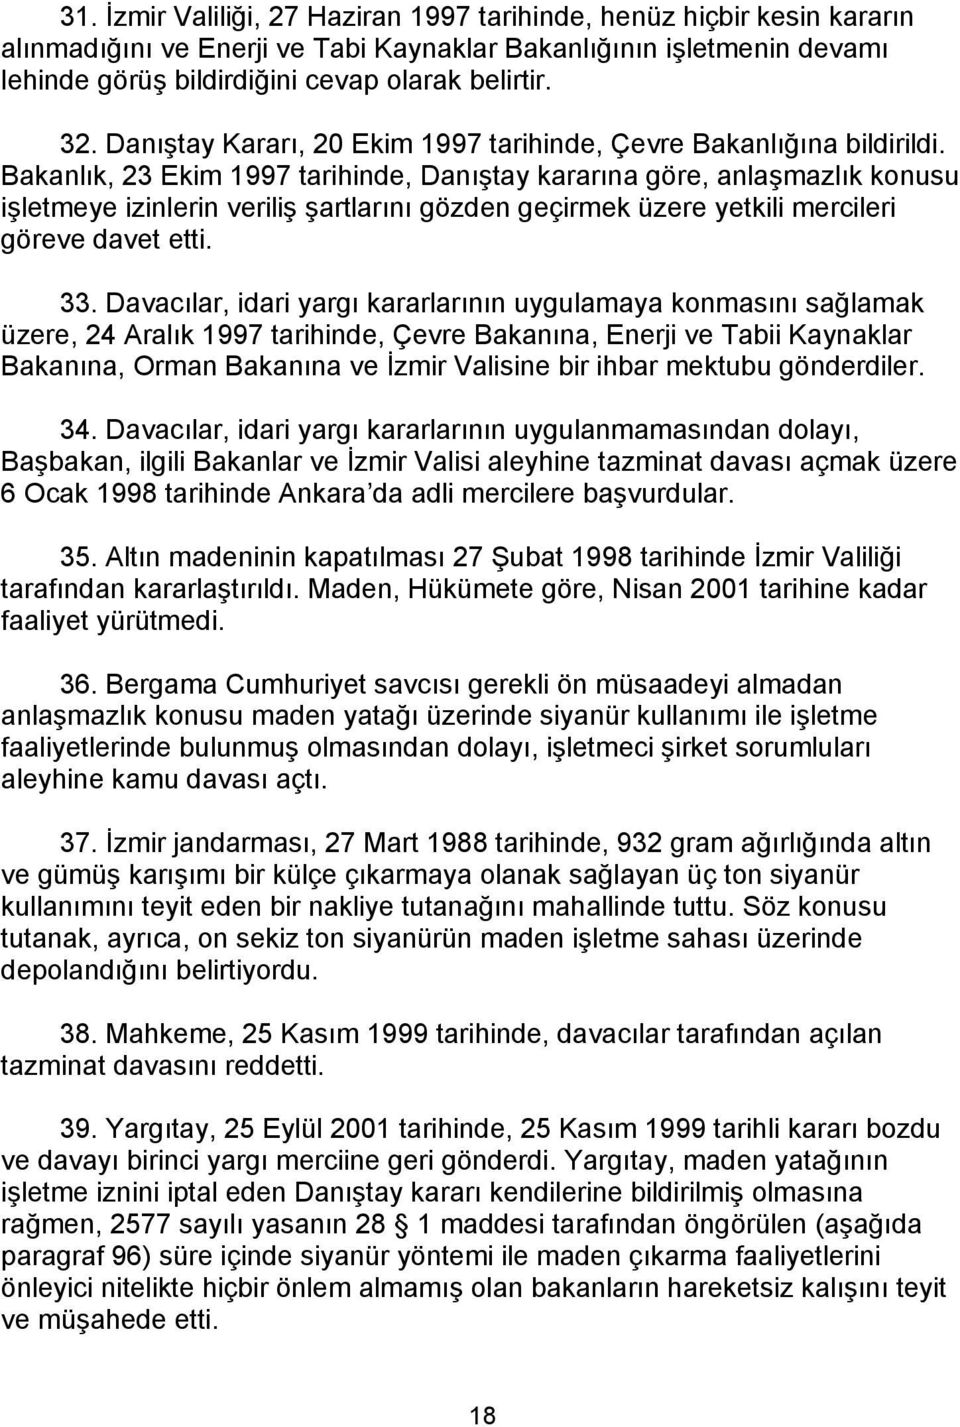 Bakanlık, 23 Ekim 1997 tarihinde, Danıştay kararına göre, anlaşmazlık konusu işletmeye izinlerin veriliş şartlarını gözden geçirmek üzere yetkili mercileri göreve davet etti. 33.